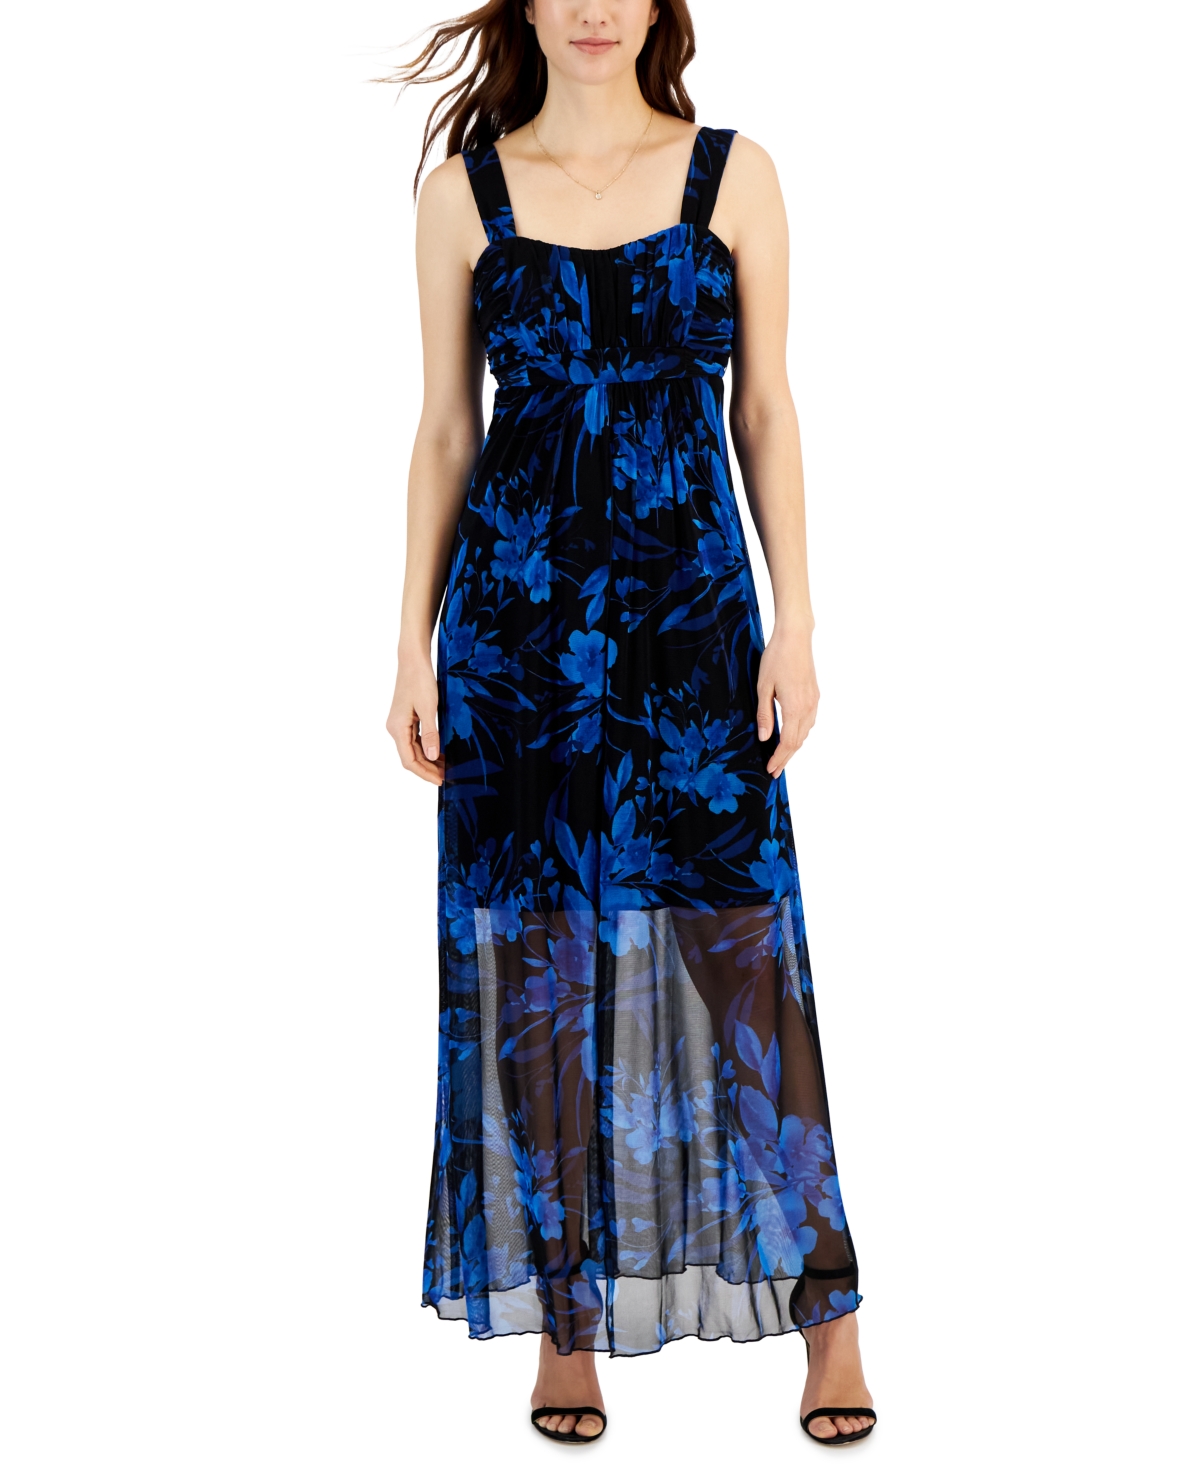 Women's Sleeveless Empire-Waist Maxi Dress - Cobalt Blue